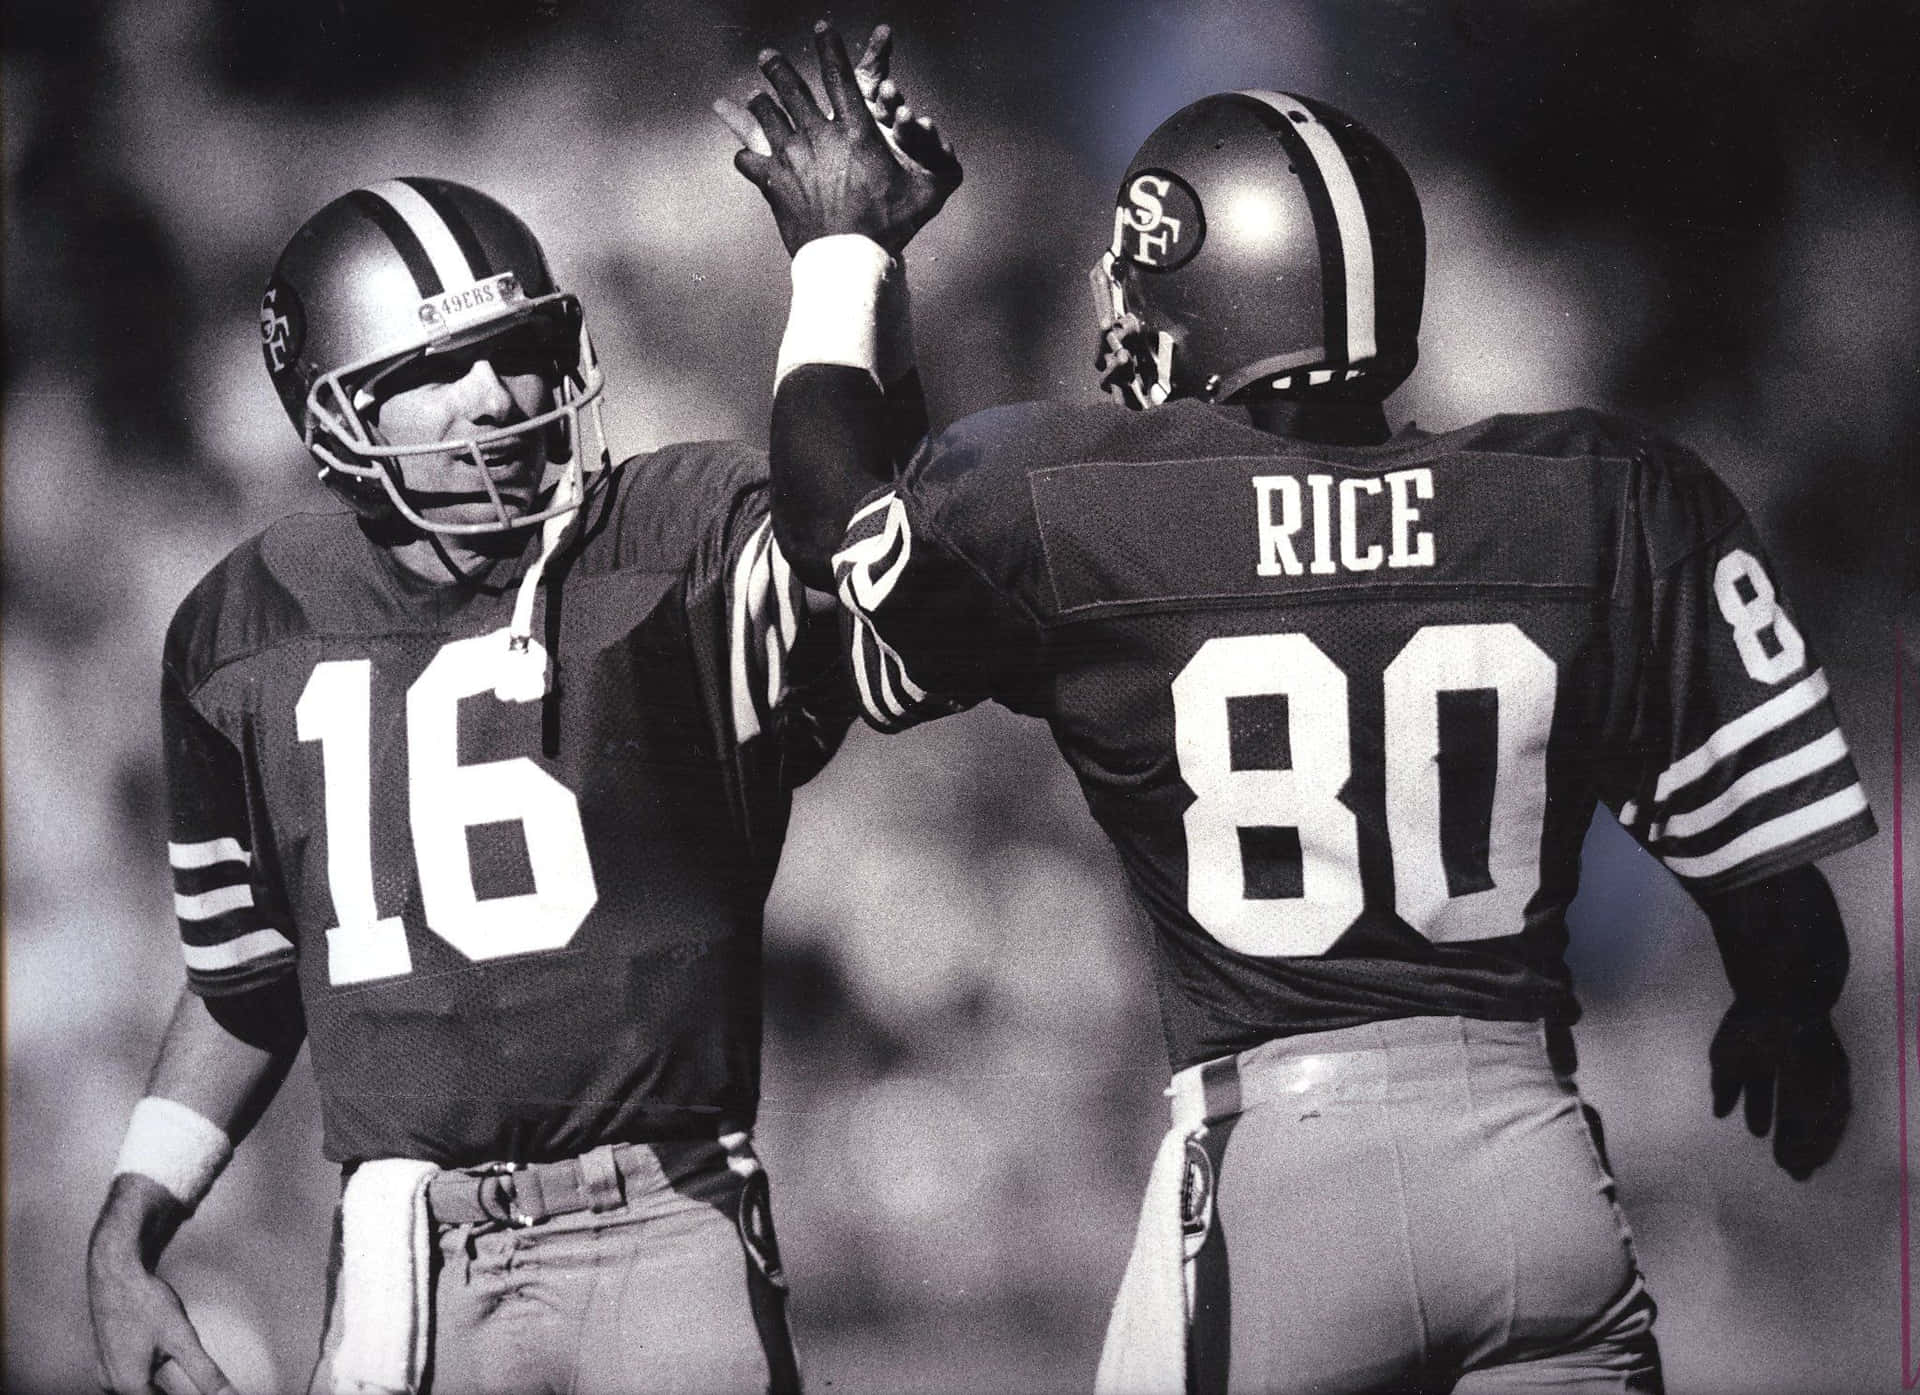 Den legendariske NFL-quarterback Joe Montana stiller sit anerkendte navn på det smukke tapet. Wallpaper